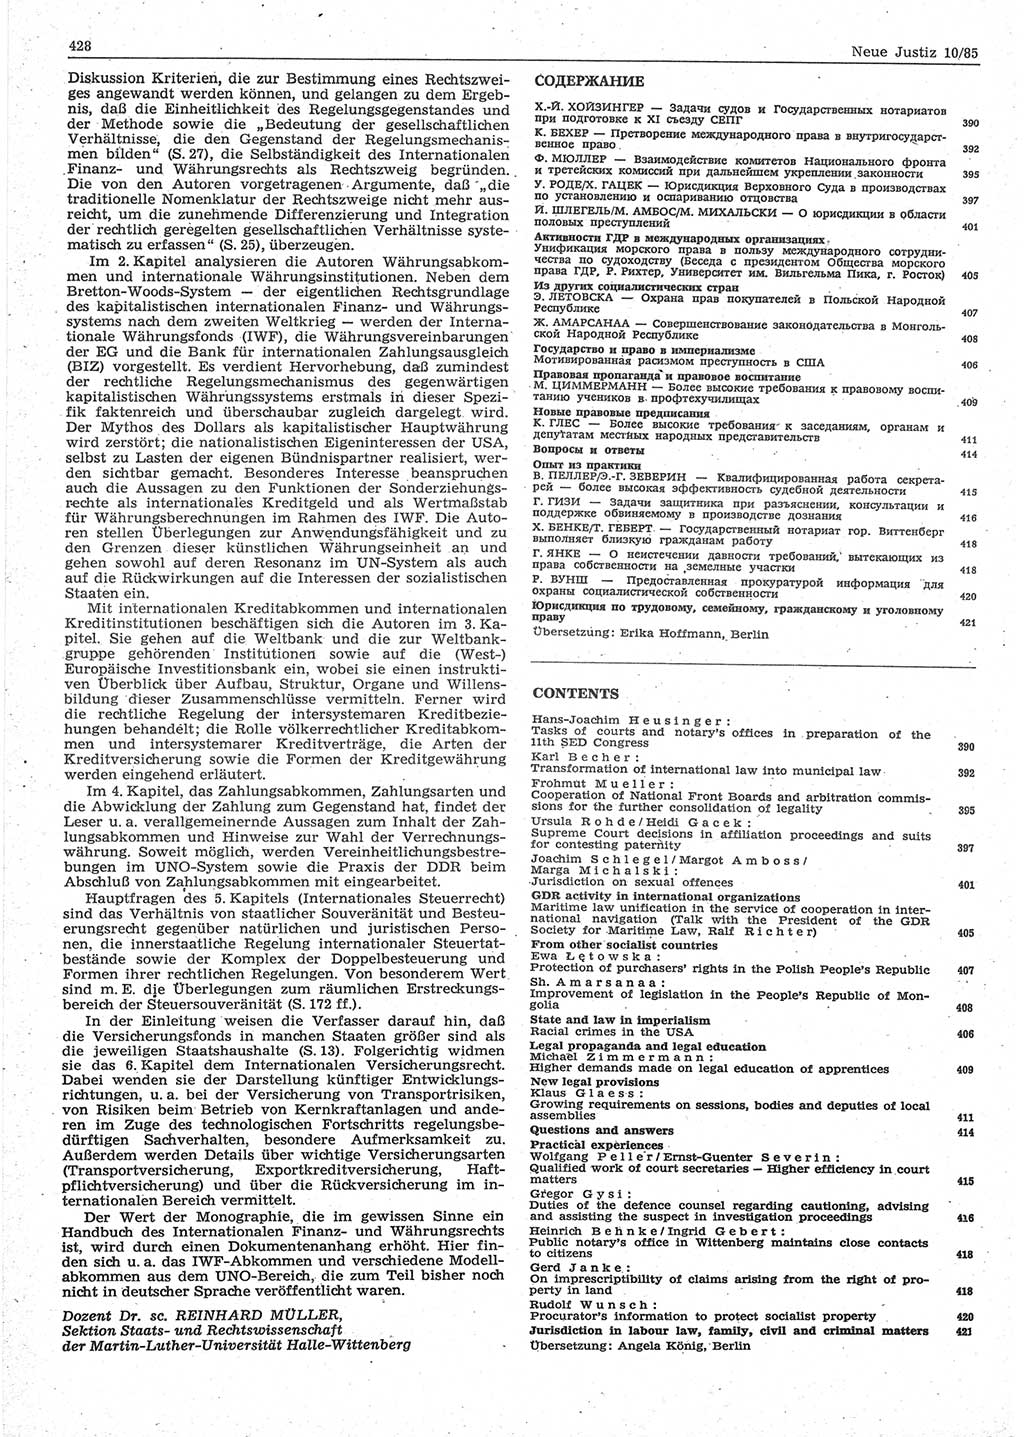 Neue Justiz (NJ), Zeitschrift für sozialistisches Recht und Gesetzlichkeit [Deutsche Demokratische Republik (DDR)], 39. Jahrgang 1985, Seite 428 (NJ DDR 1985, S. 428)